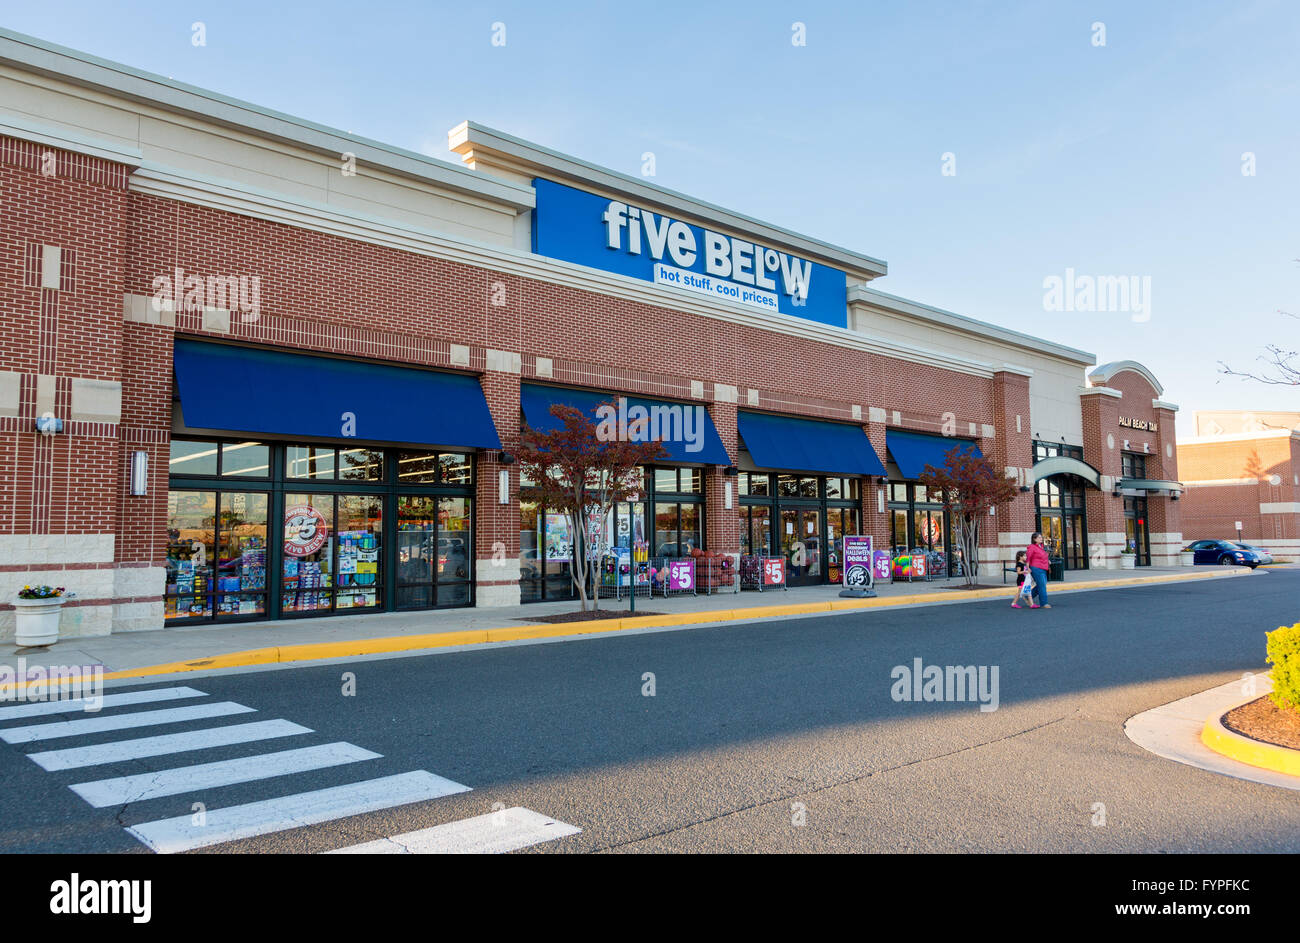 Five Below store in Gainesville, Virginia Stock Photo